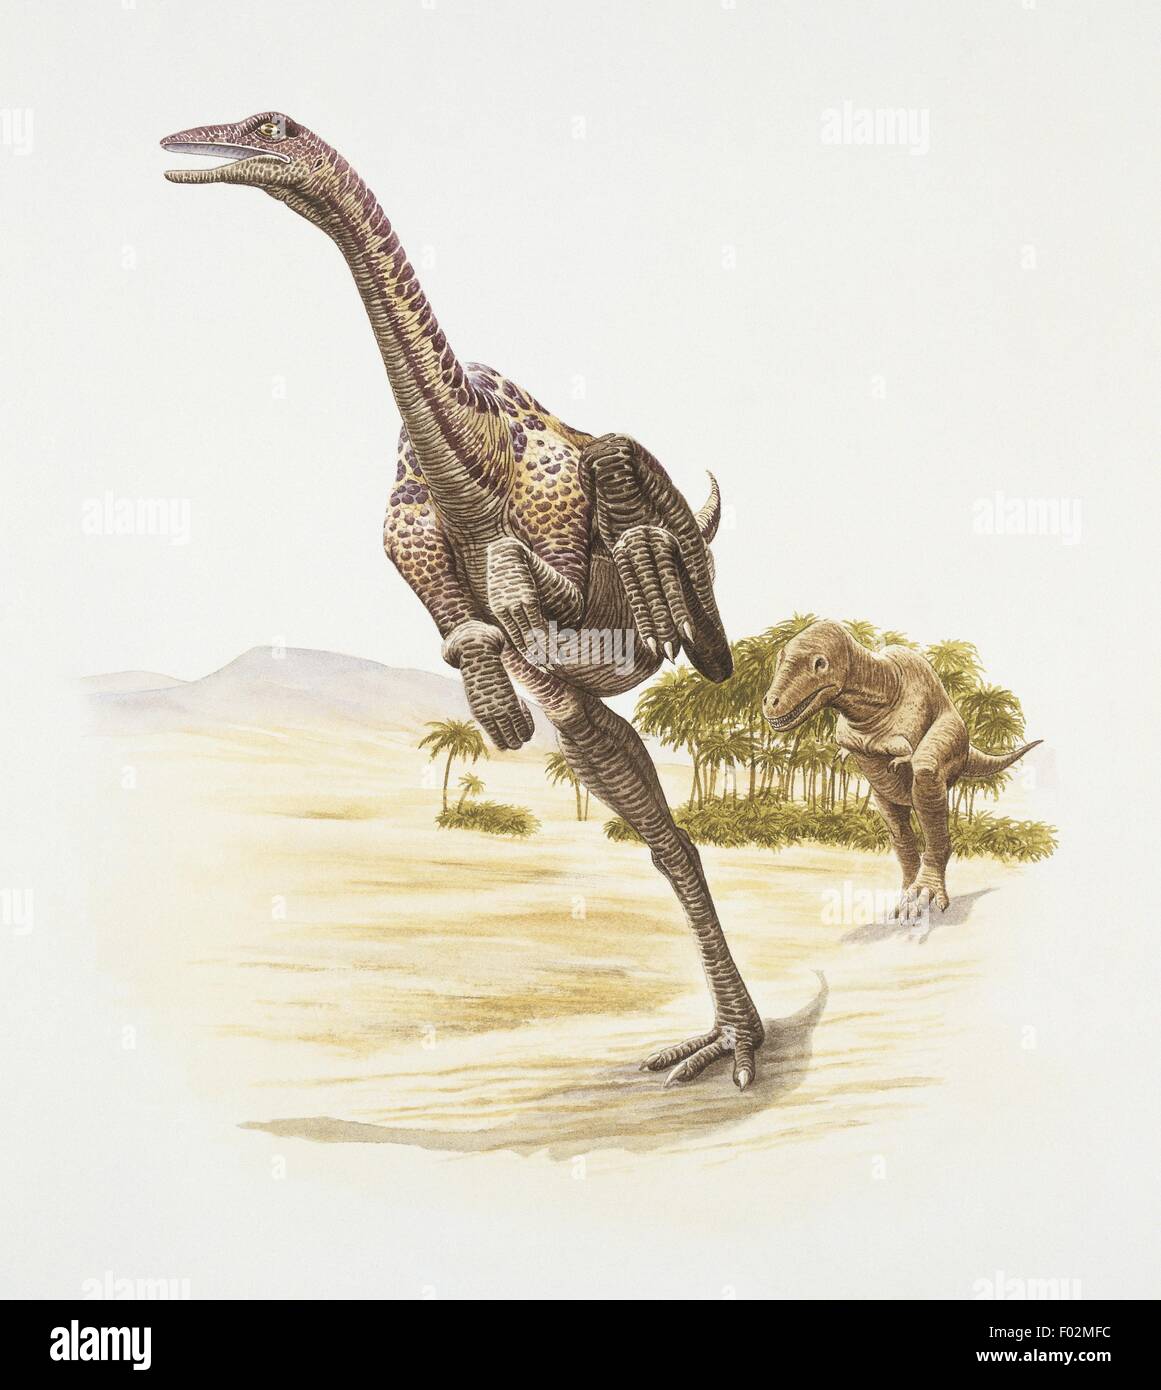 Paléozoologie - Crétacé - Dinosaures - Anserimimus (art par Barry Croucher) Banque D'Images